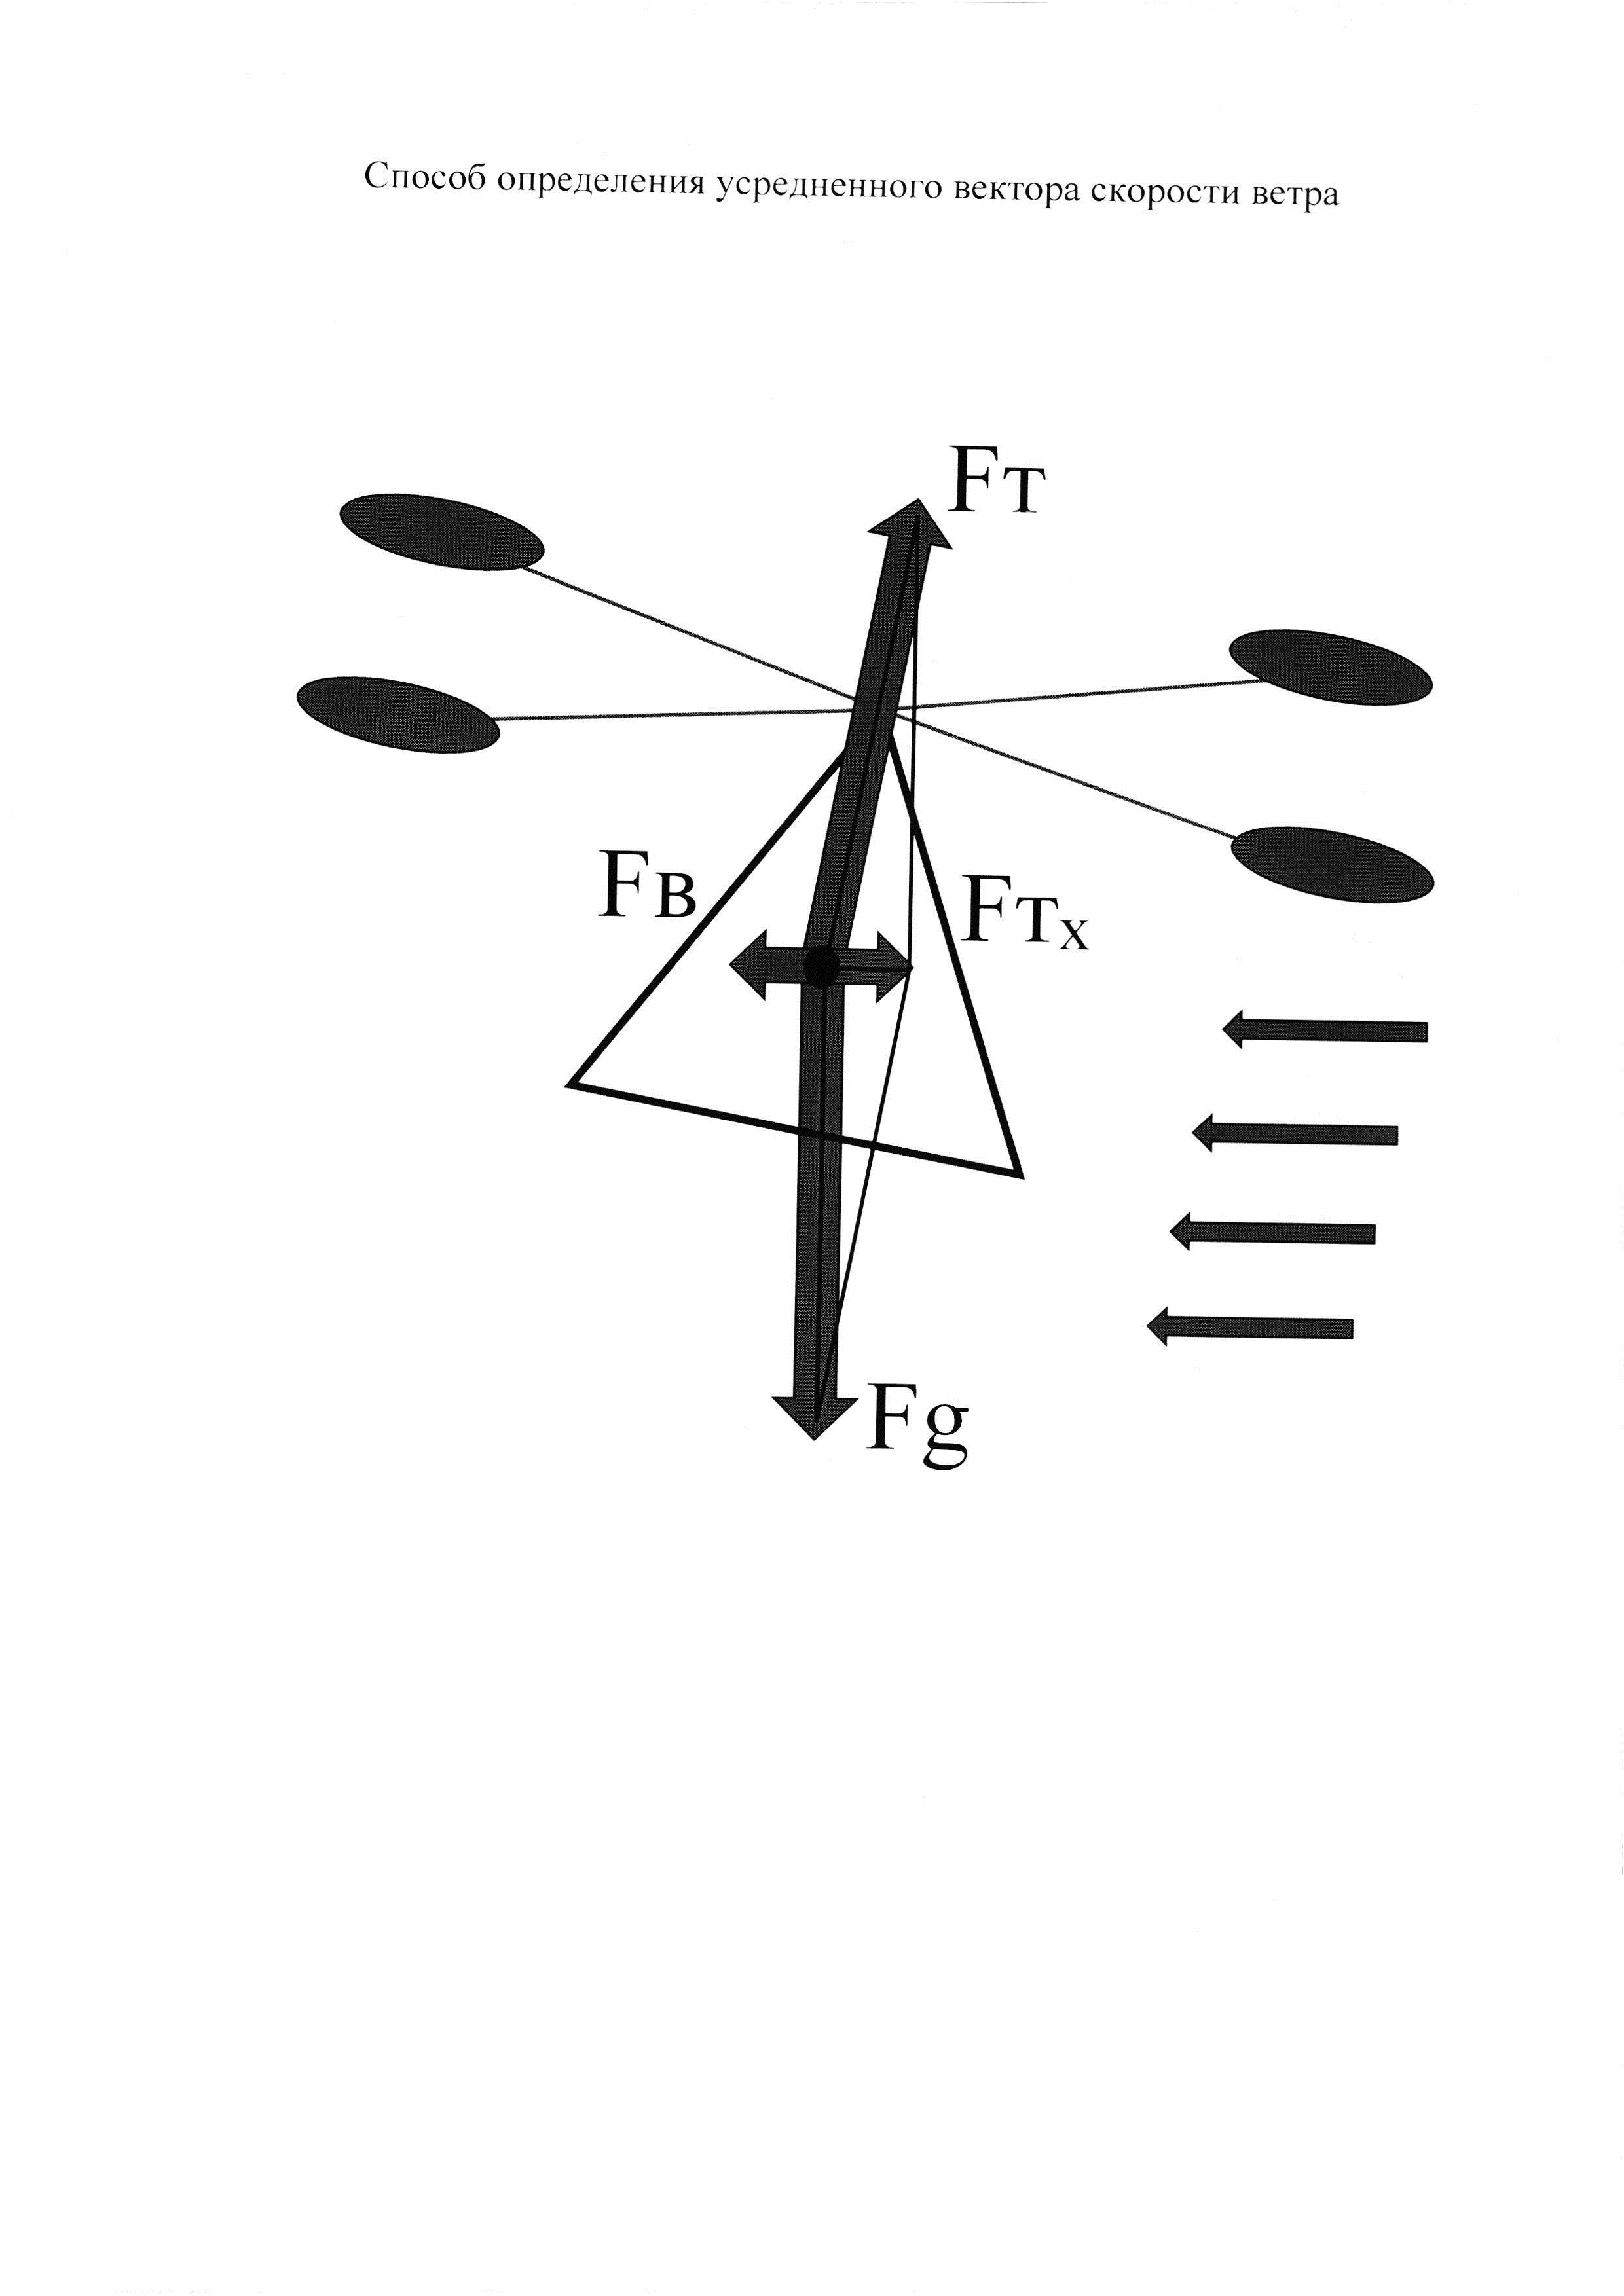 Способ определения усредненного вектора скорости ветра